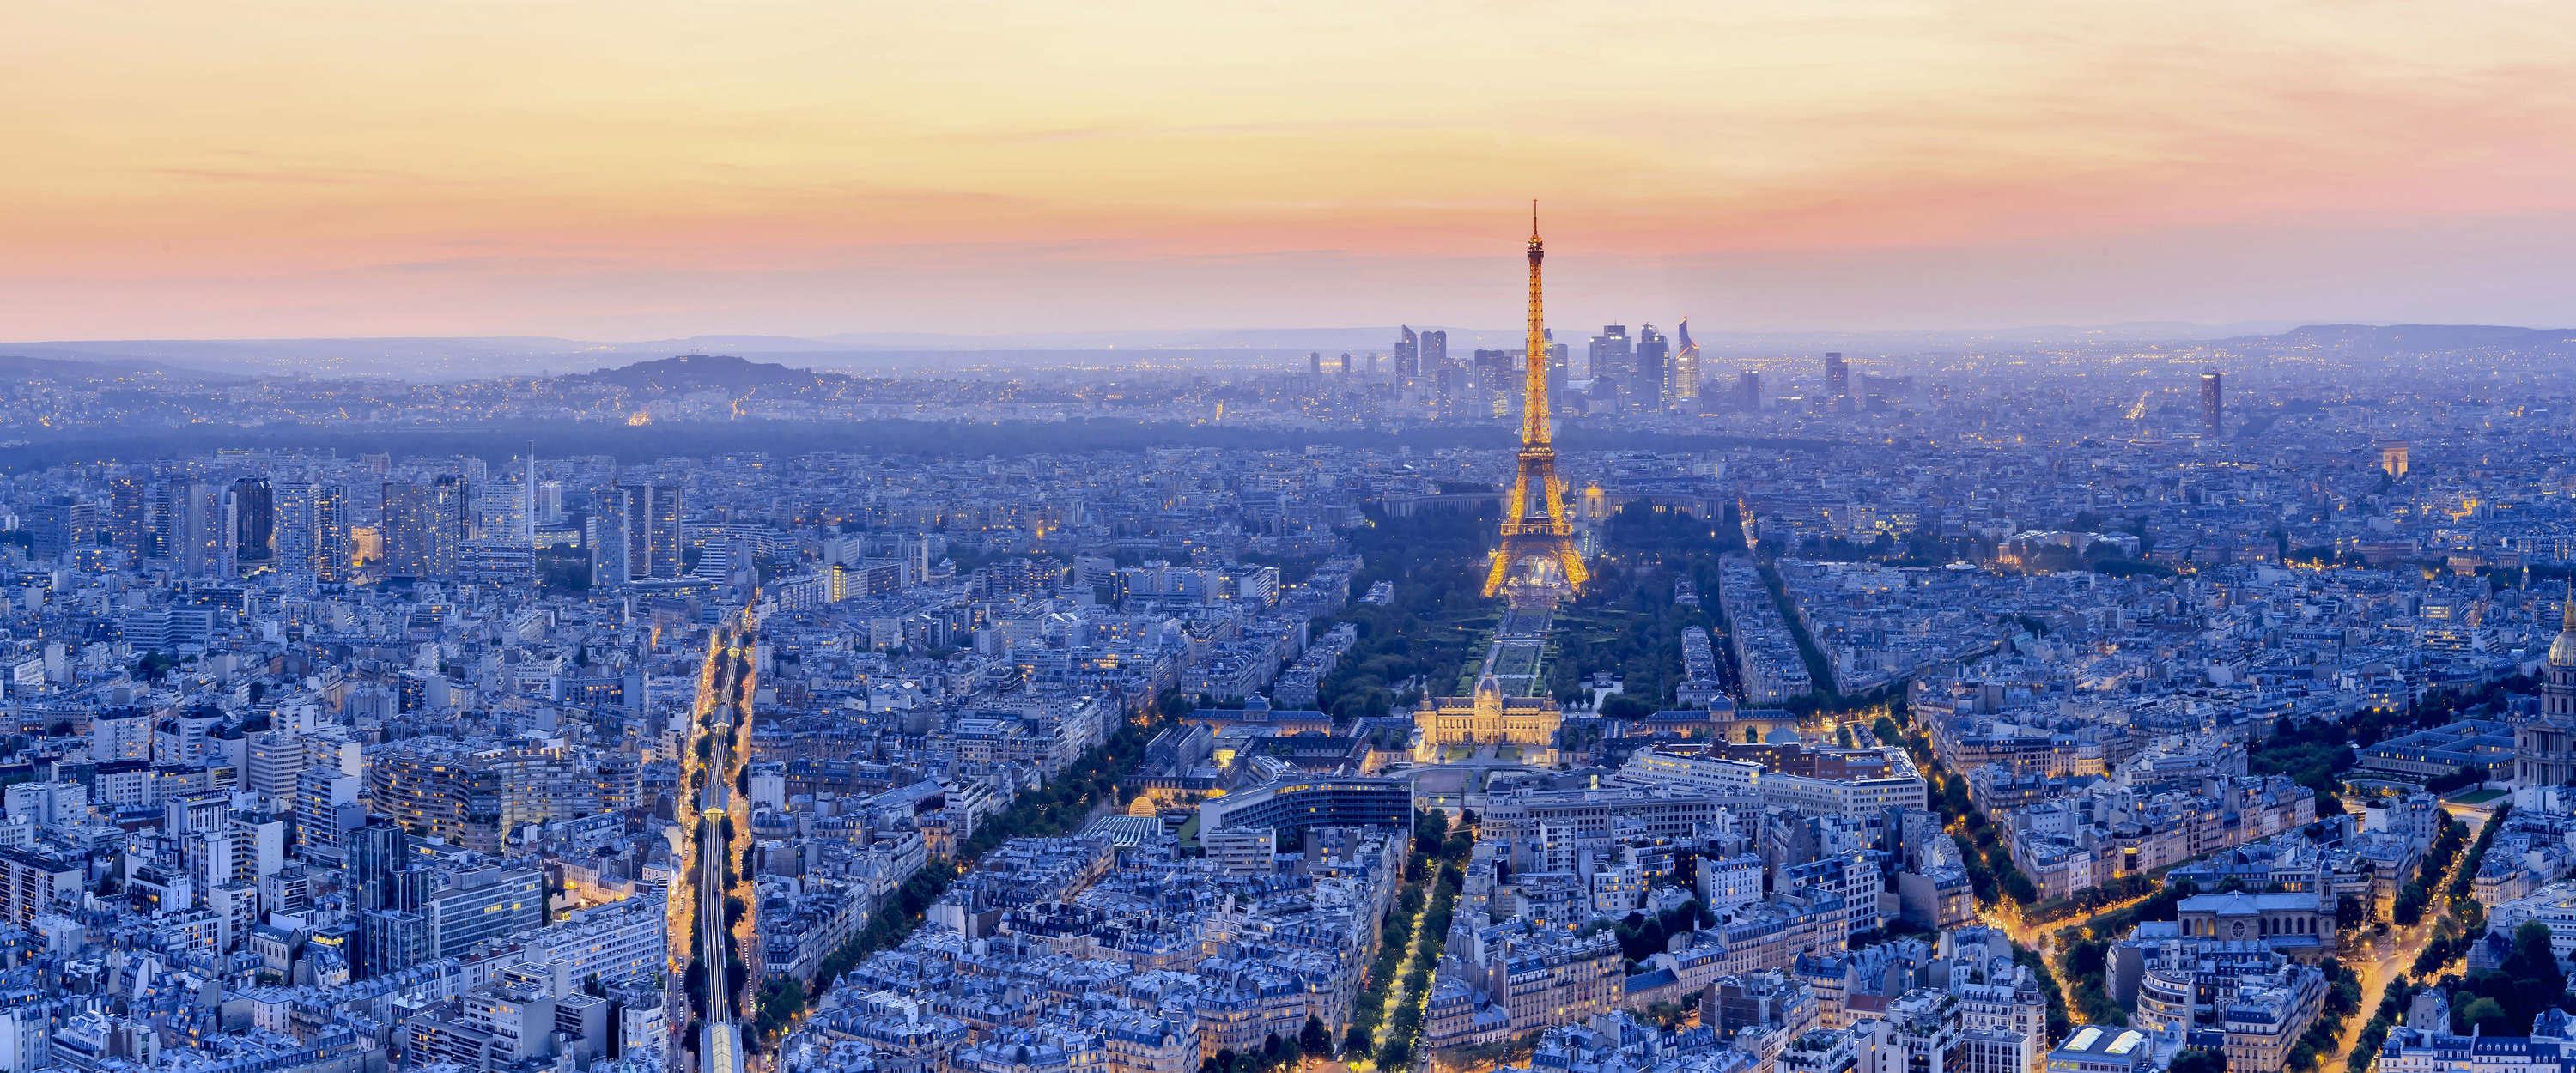             Il murale di Parigi illumina la metropoli all'alba
        